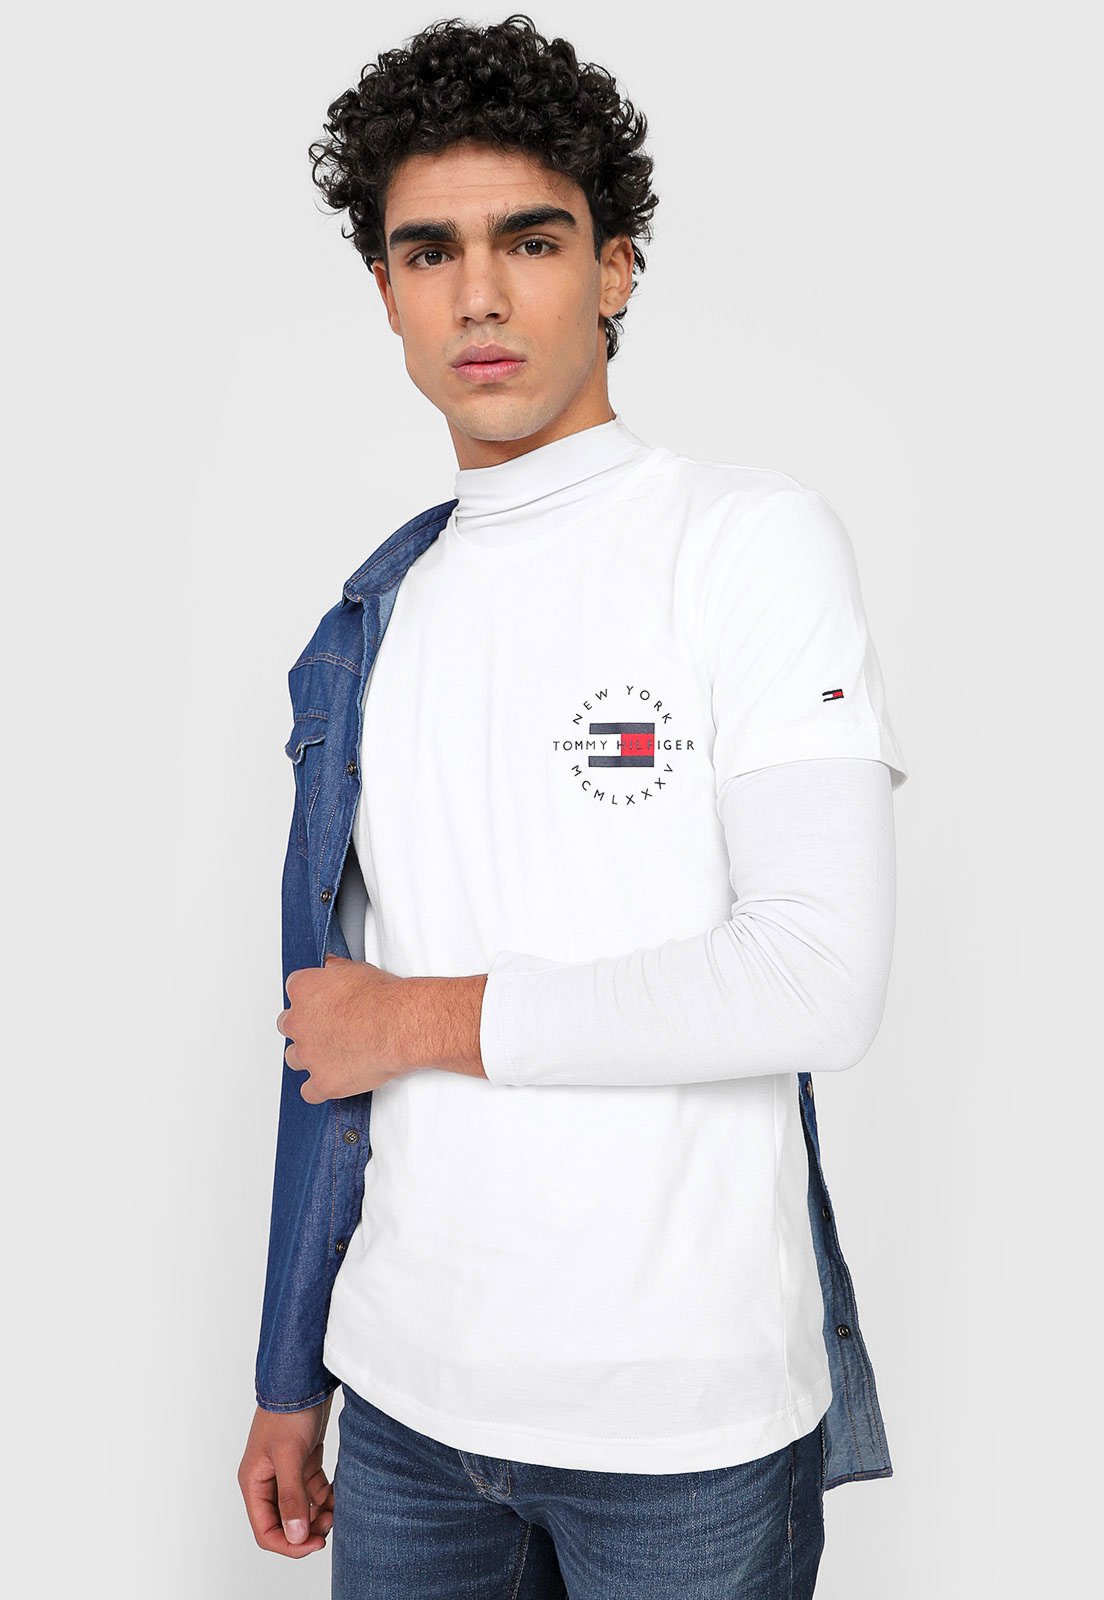 Camiseta Tommy Hilfiger Logo Branca - Compre Agora